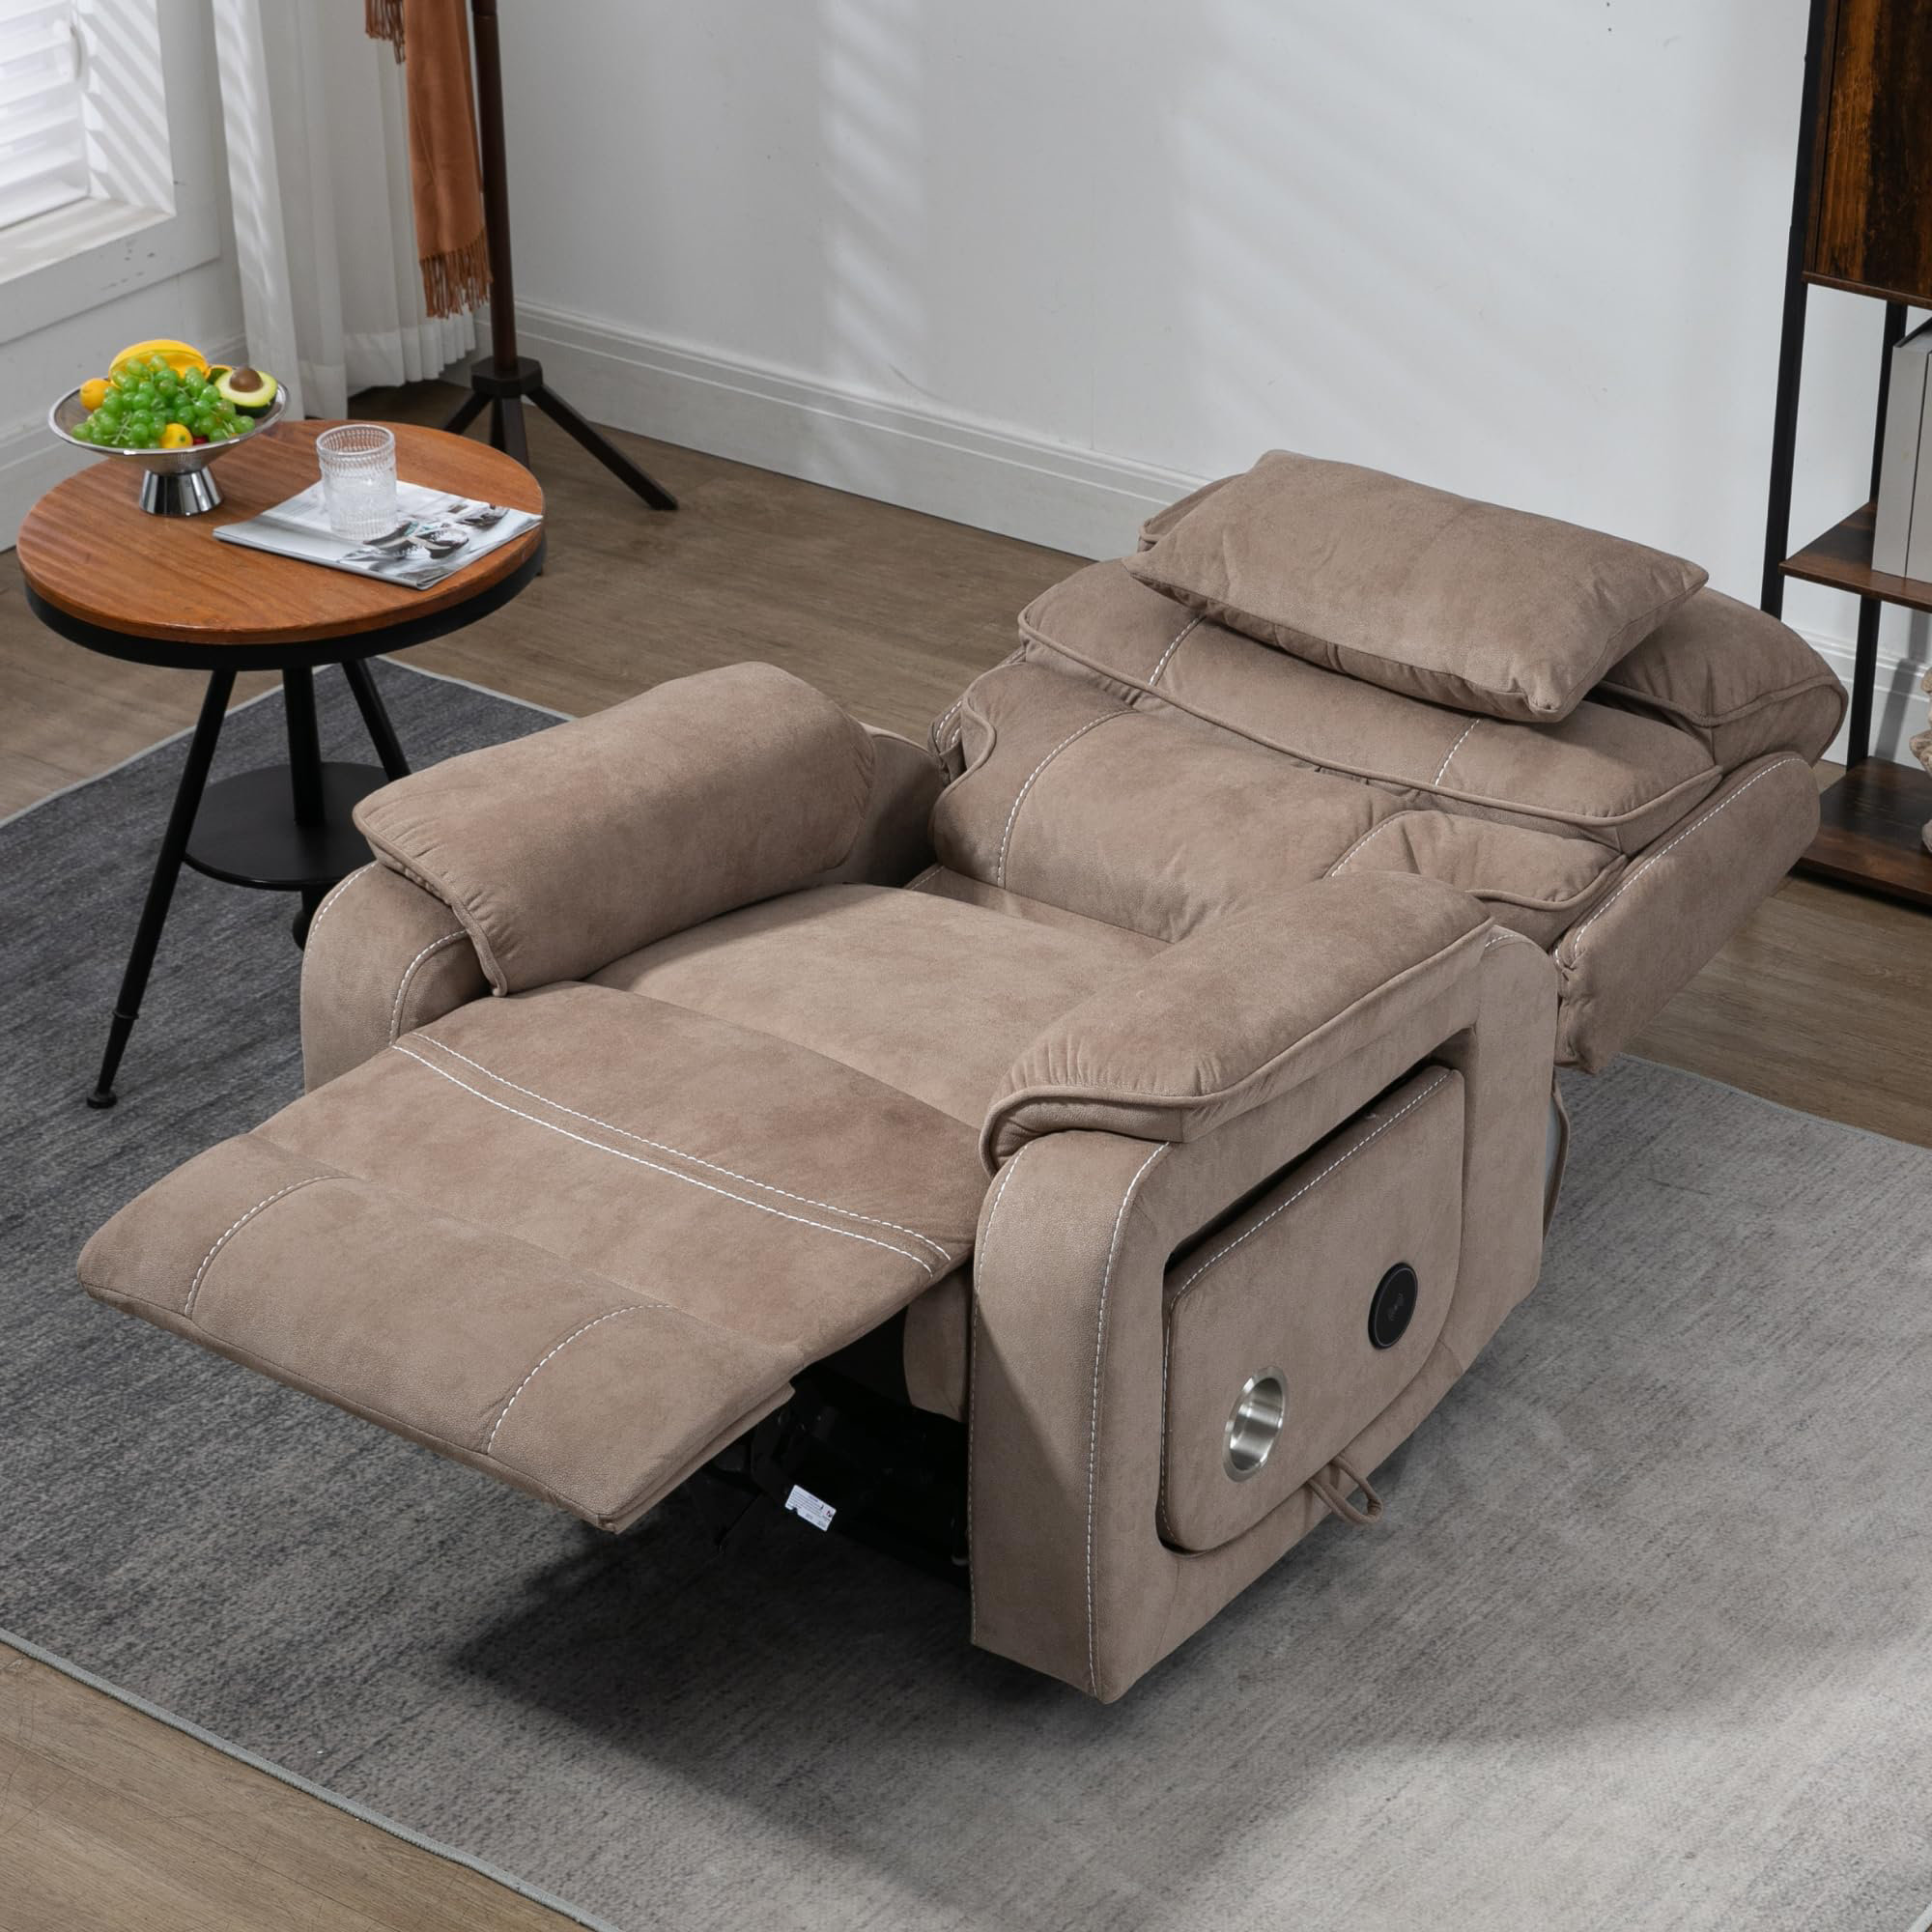 https://assets.wfcdn.com/im/48931479/compr-r85/2638/263867289/oversized-power-lift-recliner-chair-with-heat-massage-lumbar-pillow-cup-holder-180-lying-flat.jpg